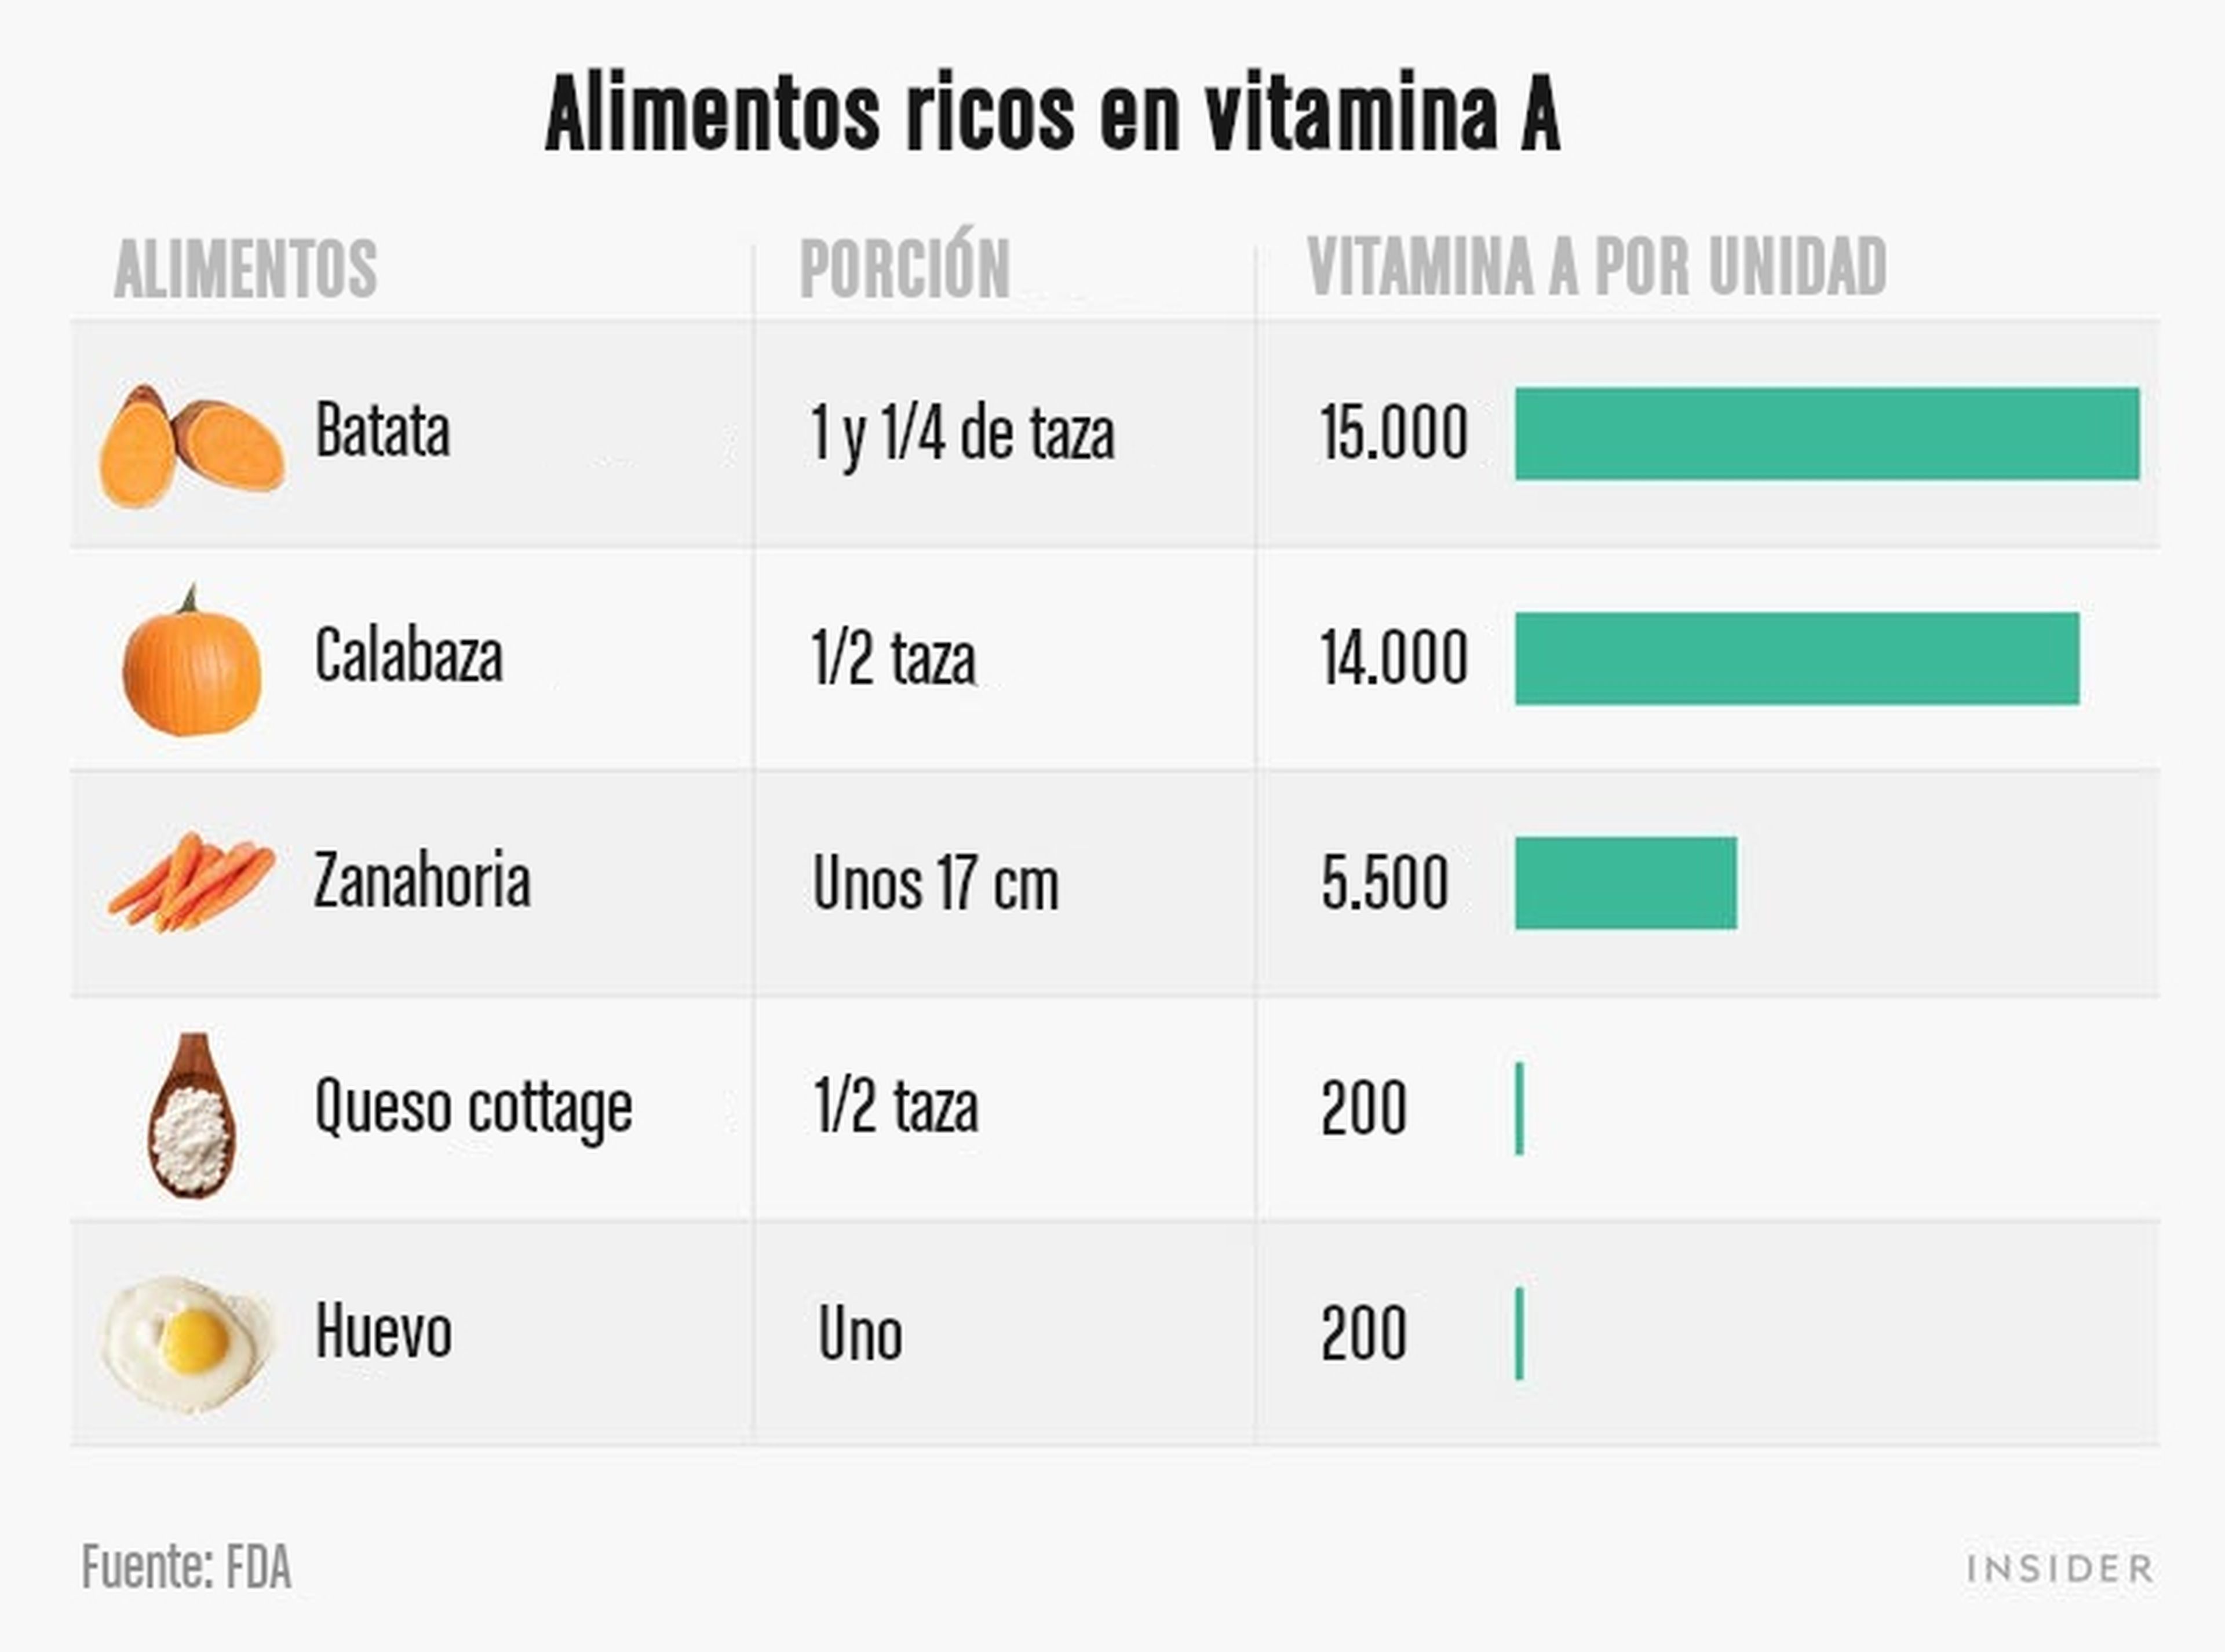 Tabla de algunos alimentos ricos en vitamina A